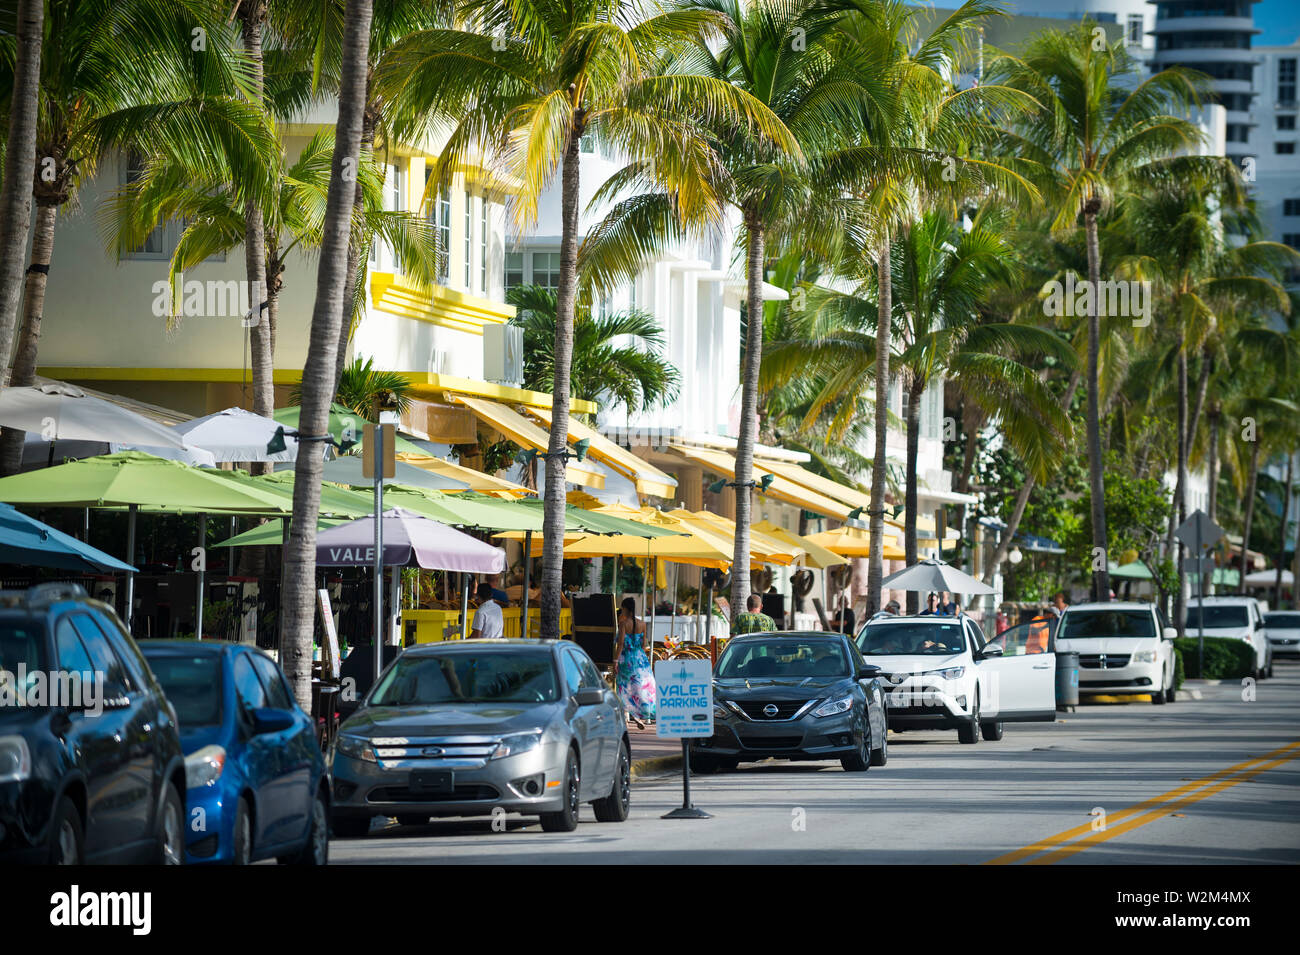 MIAMI - JULI, 2018: eine Reihe von geparkten Autos line Ocean Drive, den beliebten Unterhaltungsviertel berühmt für seine Art Deco Architektur und Palmen. Stockfoto